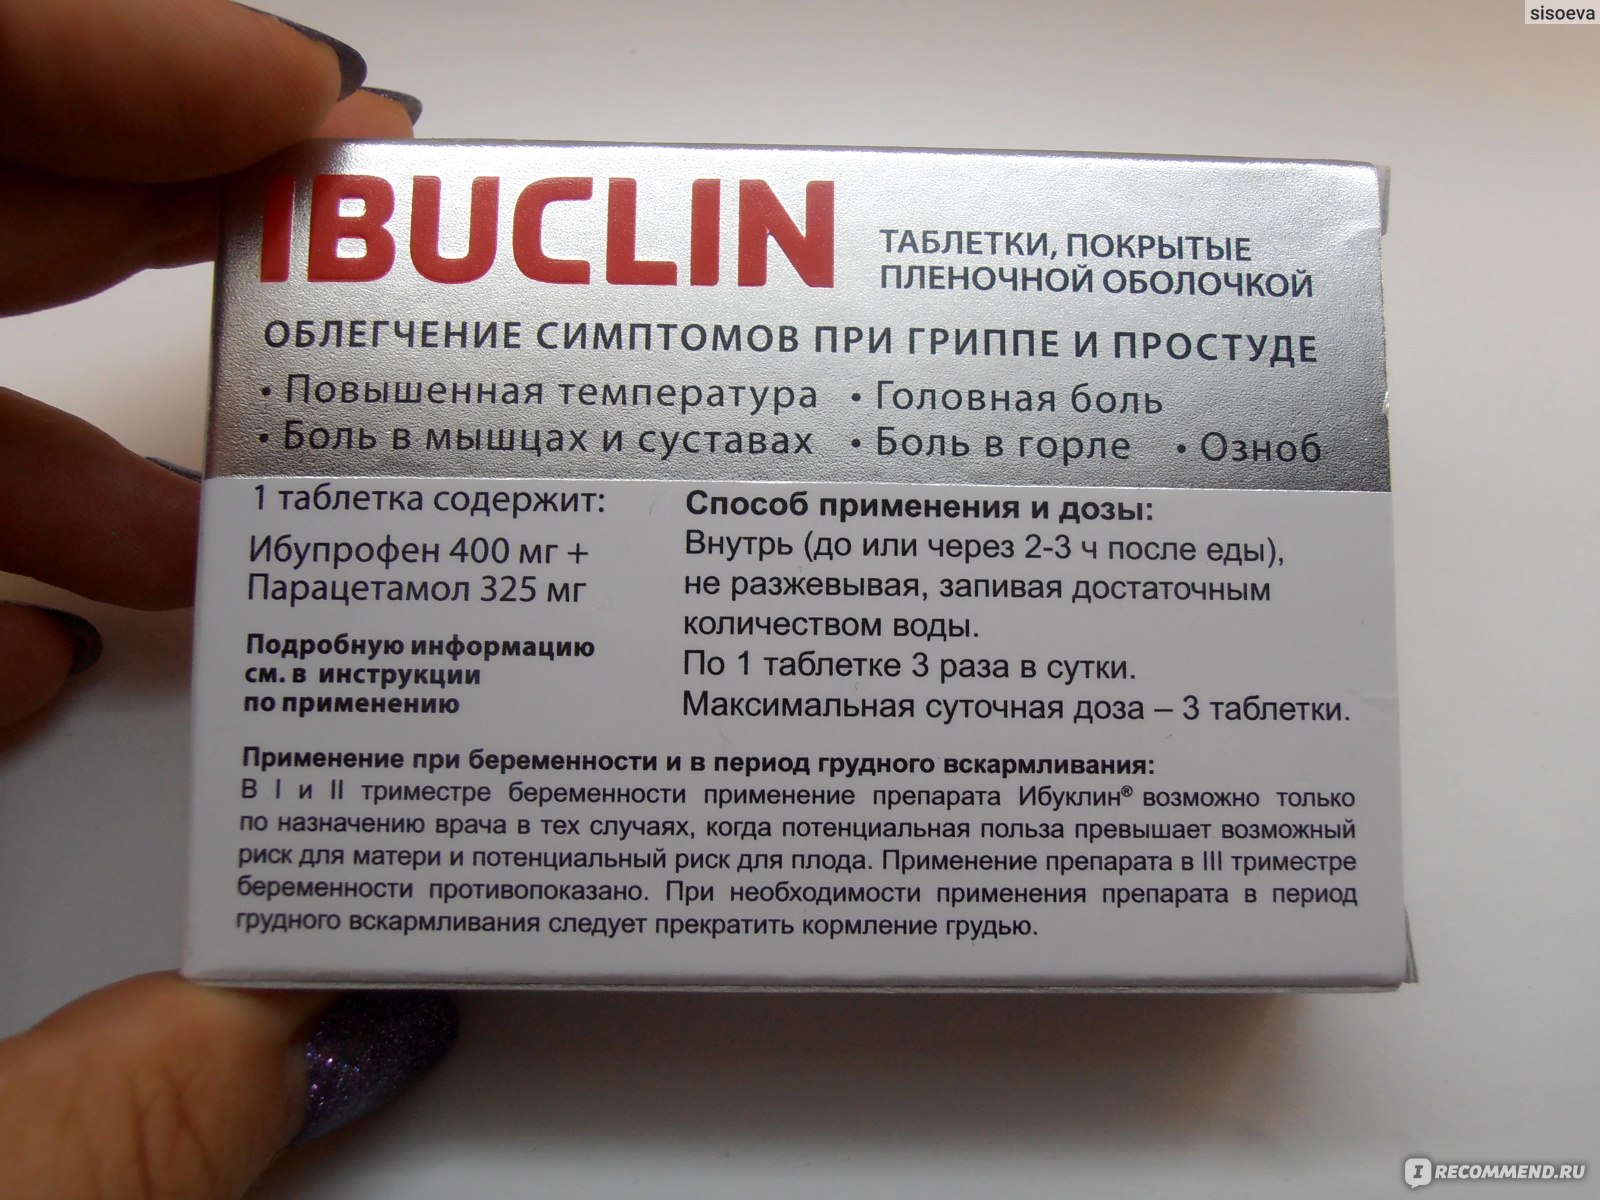 Сколько раз пьют ибуклин. Ибуклин взрослый дозировка. Ибуклин при температуре дозировка. Ибуклин таблетки взрослым при температуре.